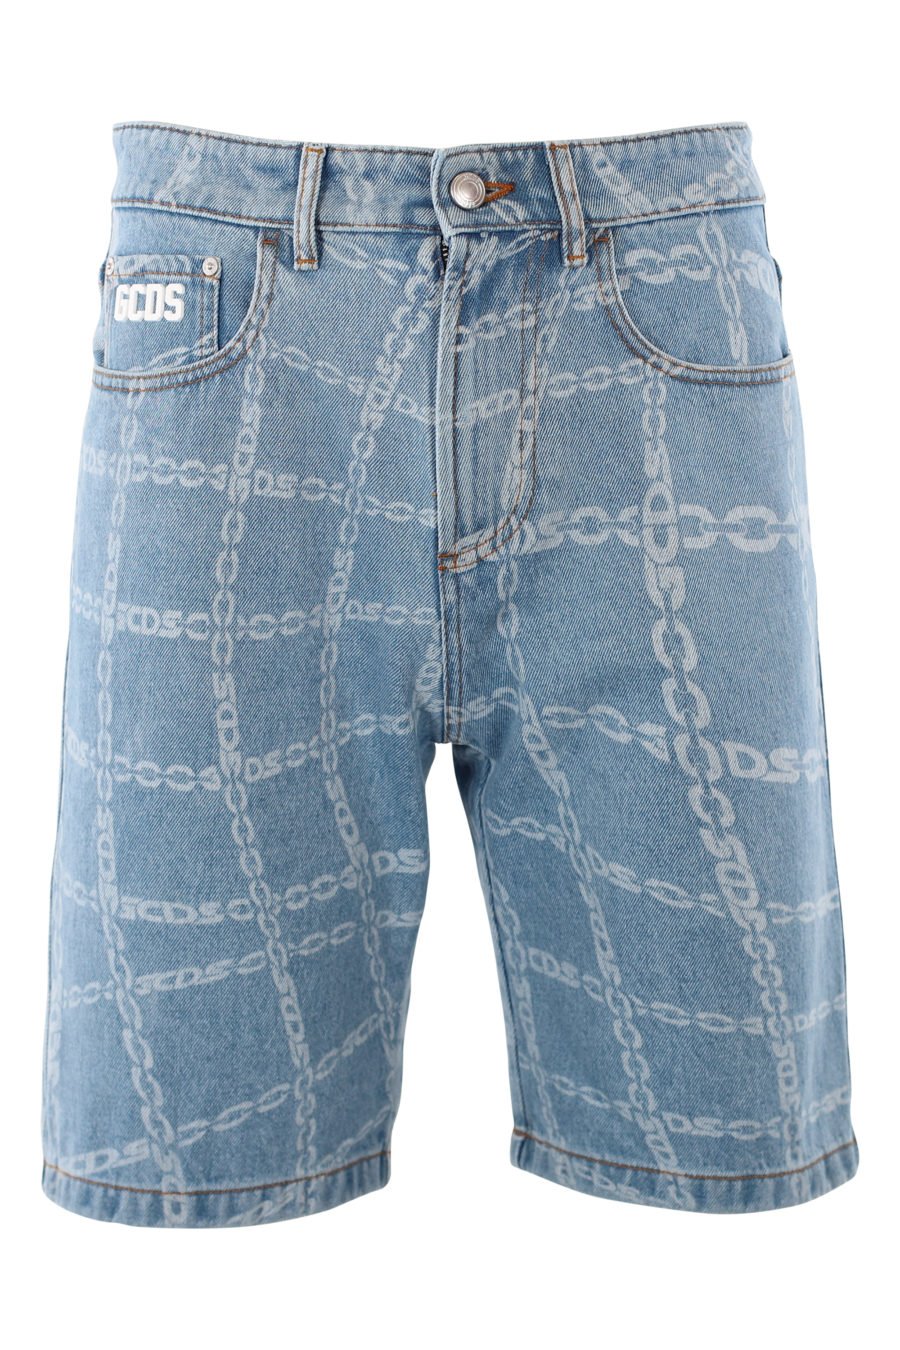 Pantalón corto azul con logo en goma y estampado blanco - IMG 2013